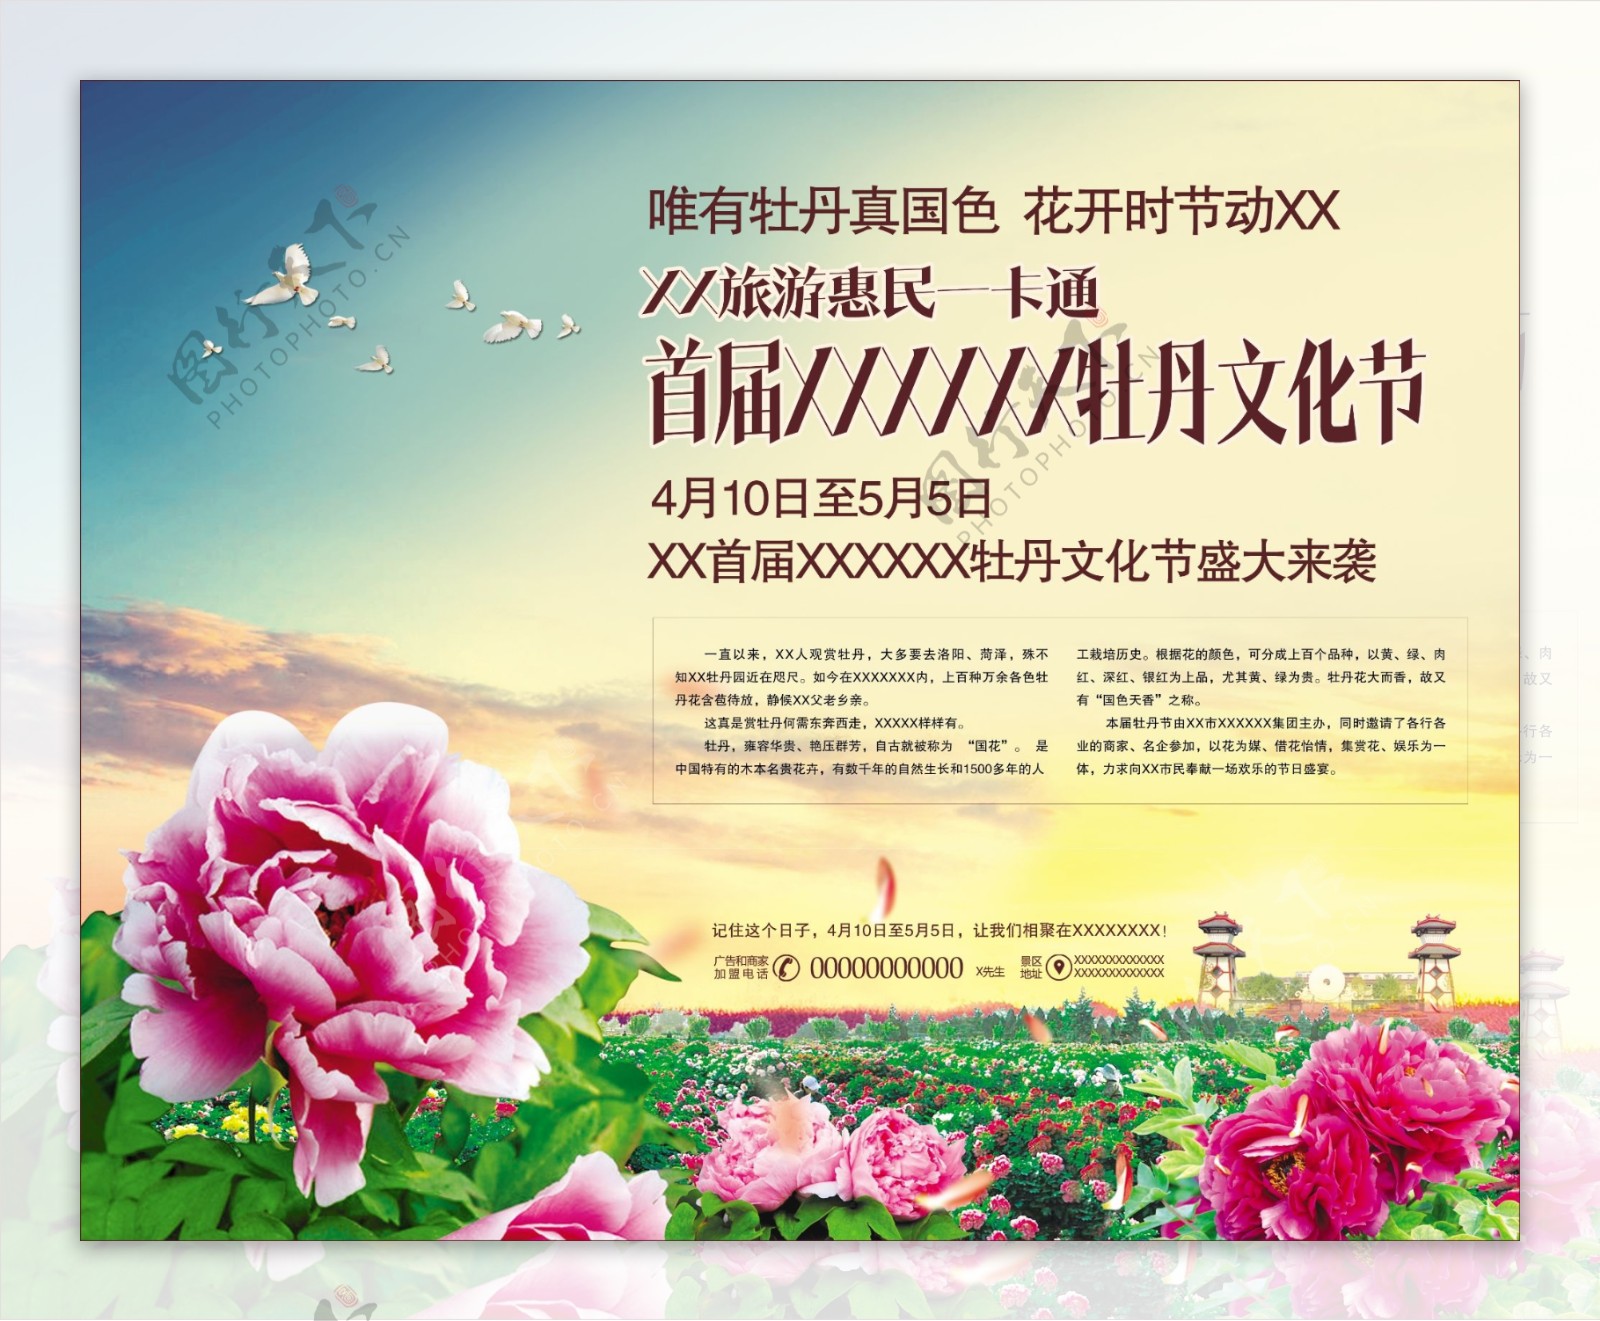 牡丹节文化节宣传海报